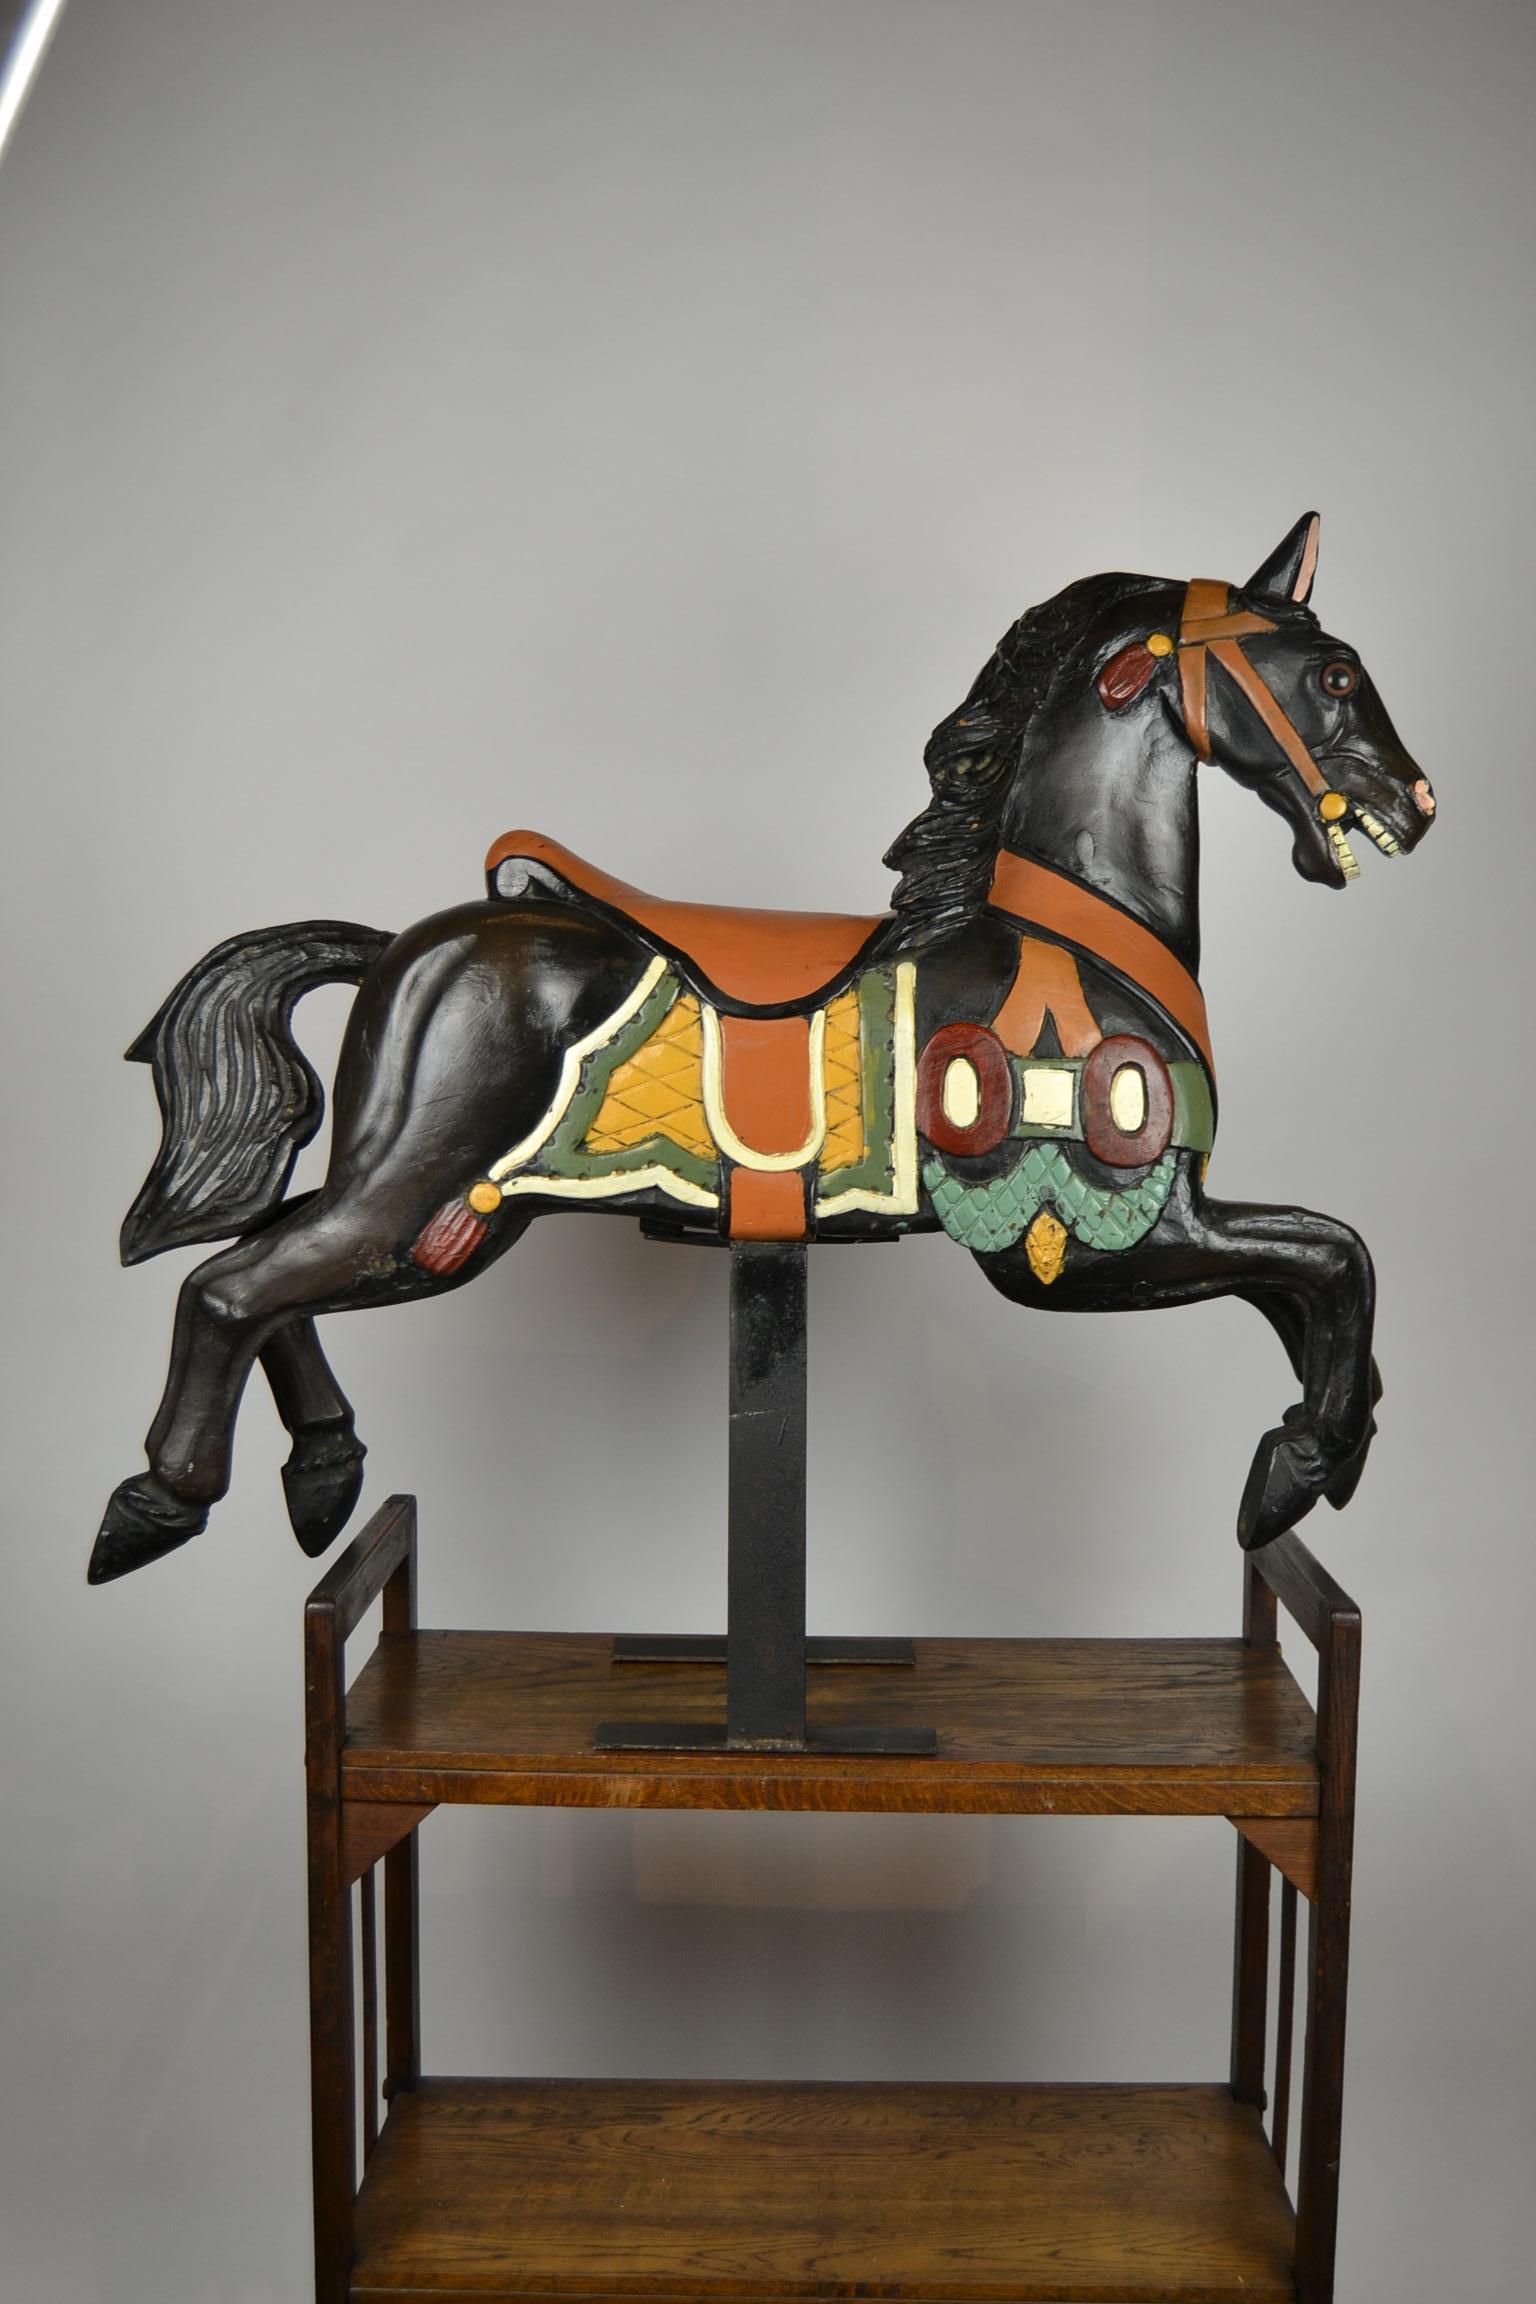 Karussellpferd aus Holz - Jahrmarktspferd - Karussellpferd.
Kleineres Modell, daher leicht zu platzieren.
Diese Mitte des 20. Jahrhunderts handgeschnitzte Tierskulptur ist ein
Schwarzes Pferd - Black Beauty auf einem Metallsockel.
Es ist handbemalt